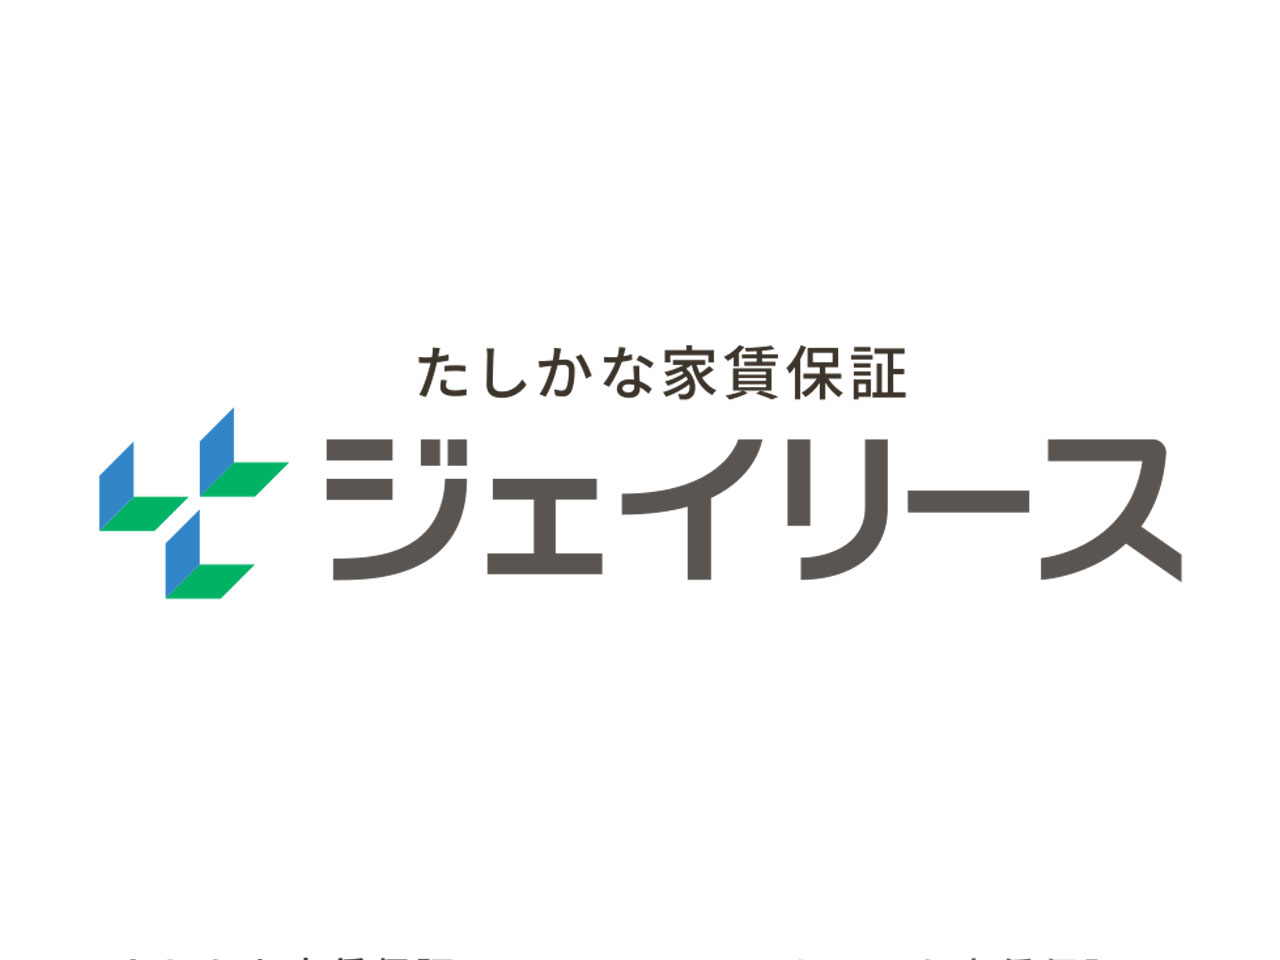 大分・東京の2本社体制で家賃債務保証ビジネスを全国展開する同社。